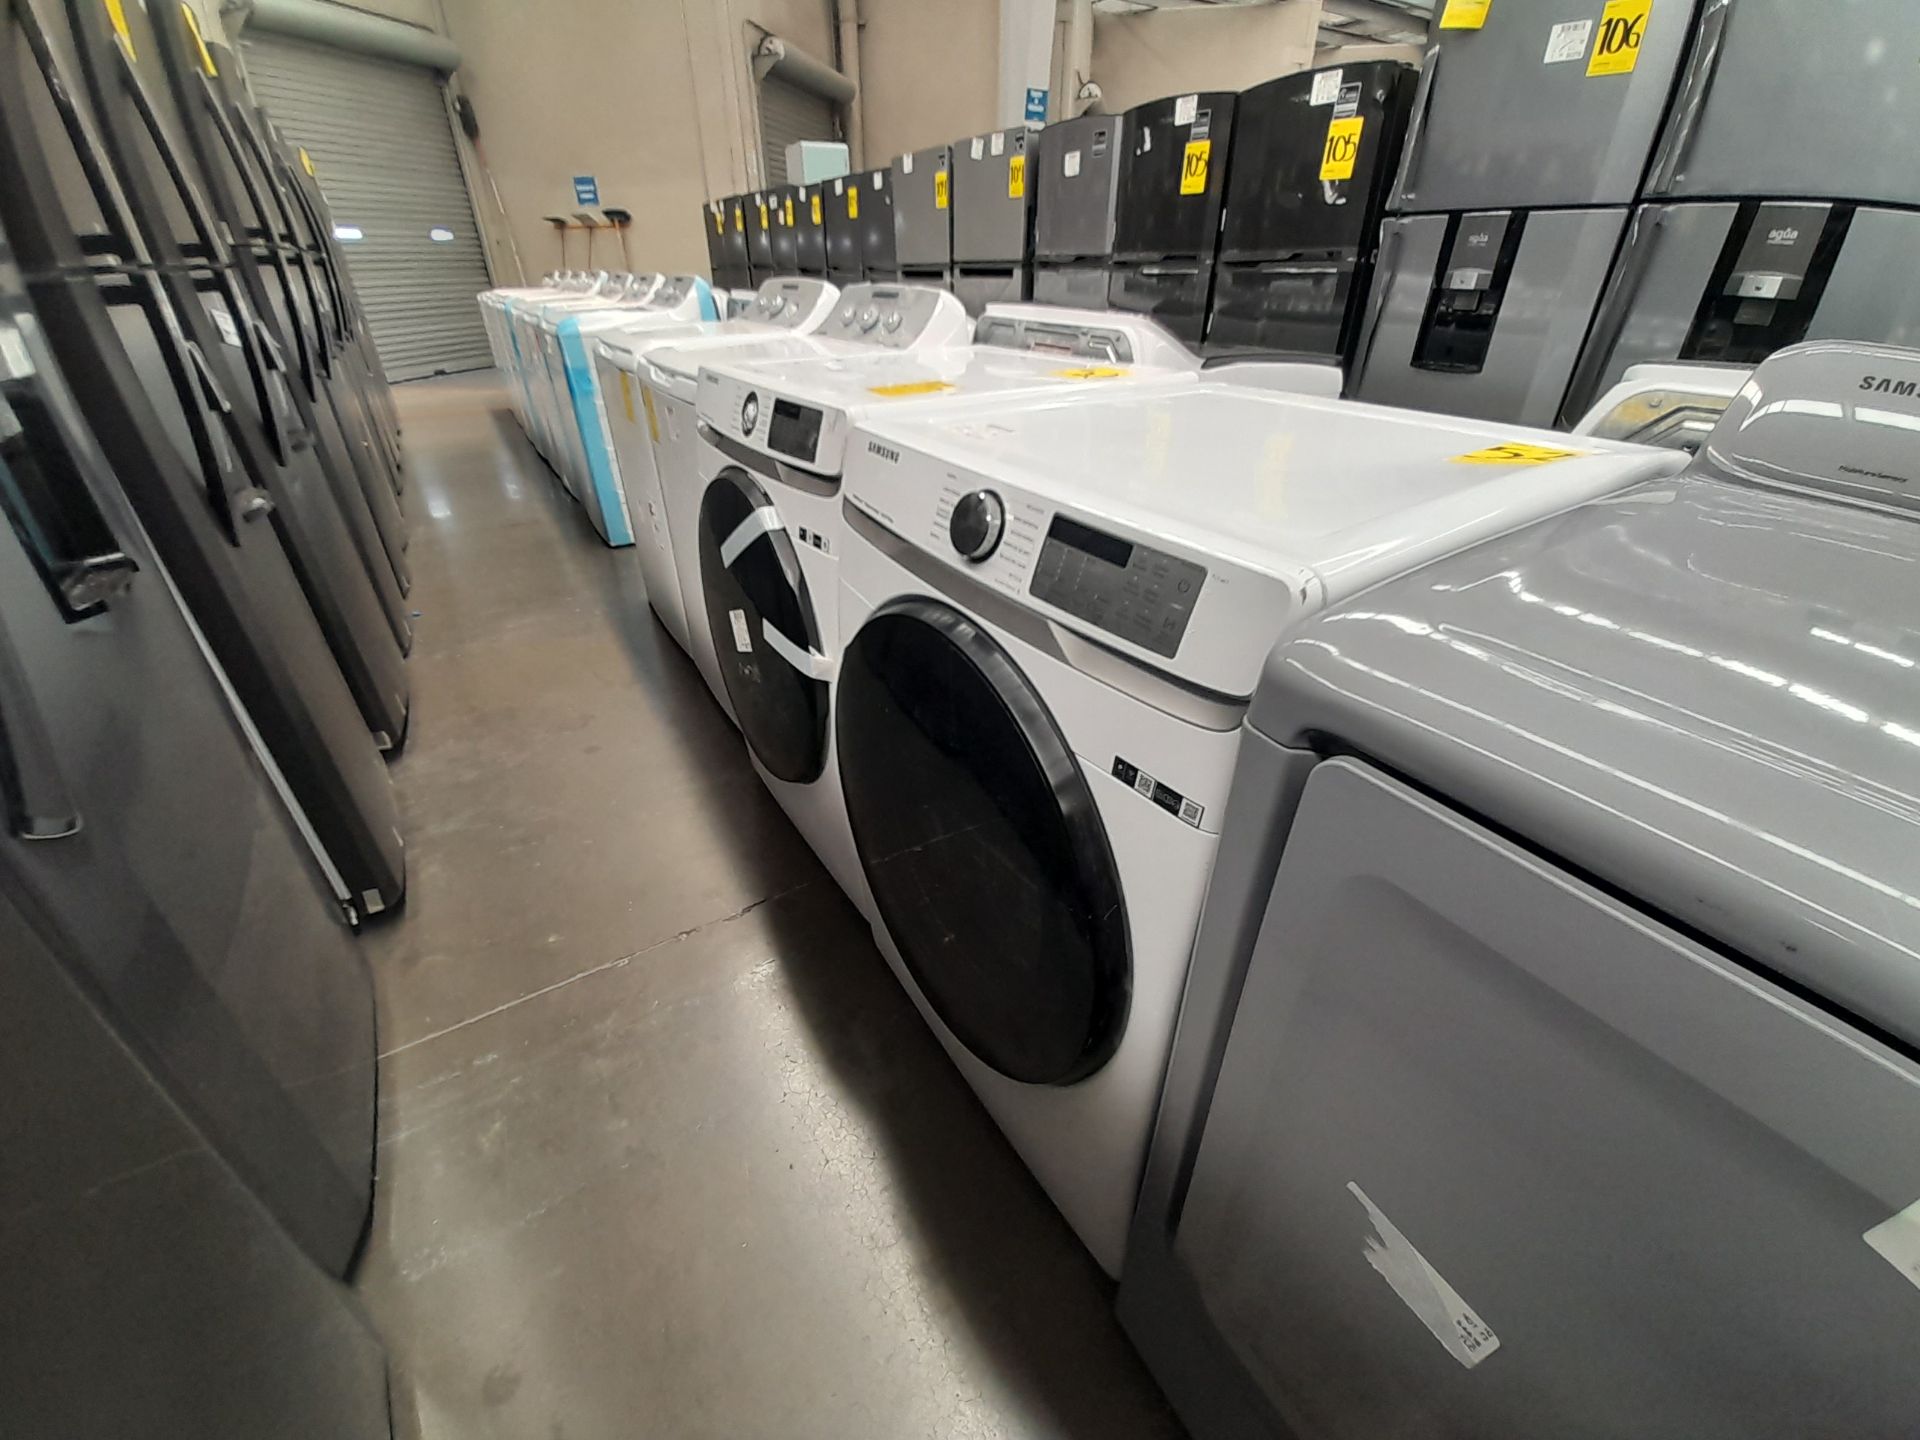 Lote de 1 lavadora y 1 Secadora contiene: 1 lavadora de 22 KG, Marca SAMSUNG, Modelo WF22R6270AV, S - Image 2 of 7